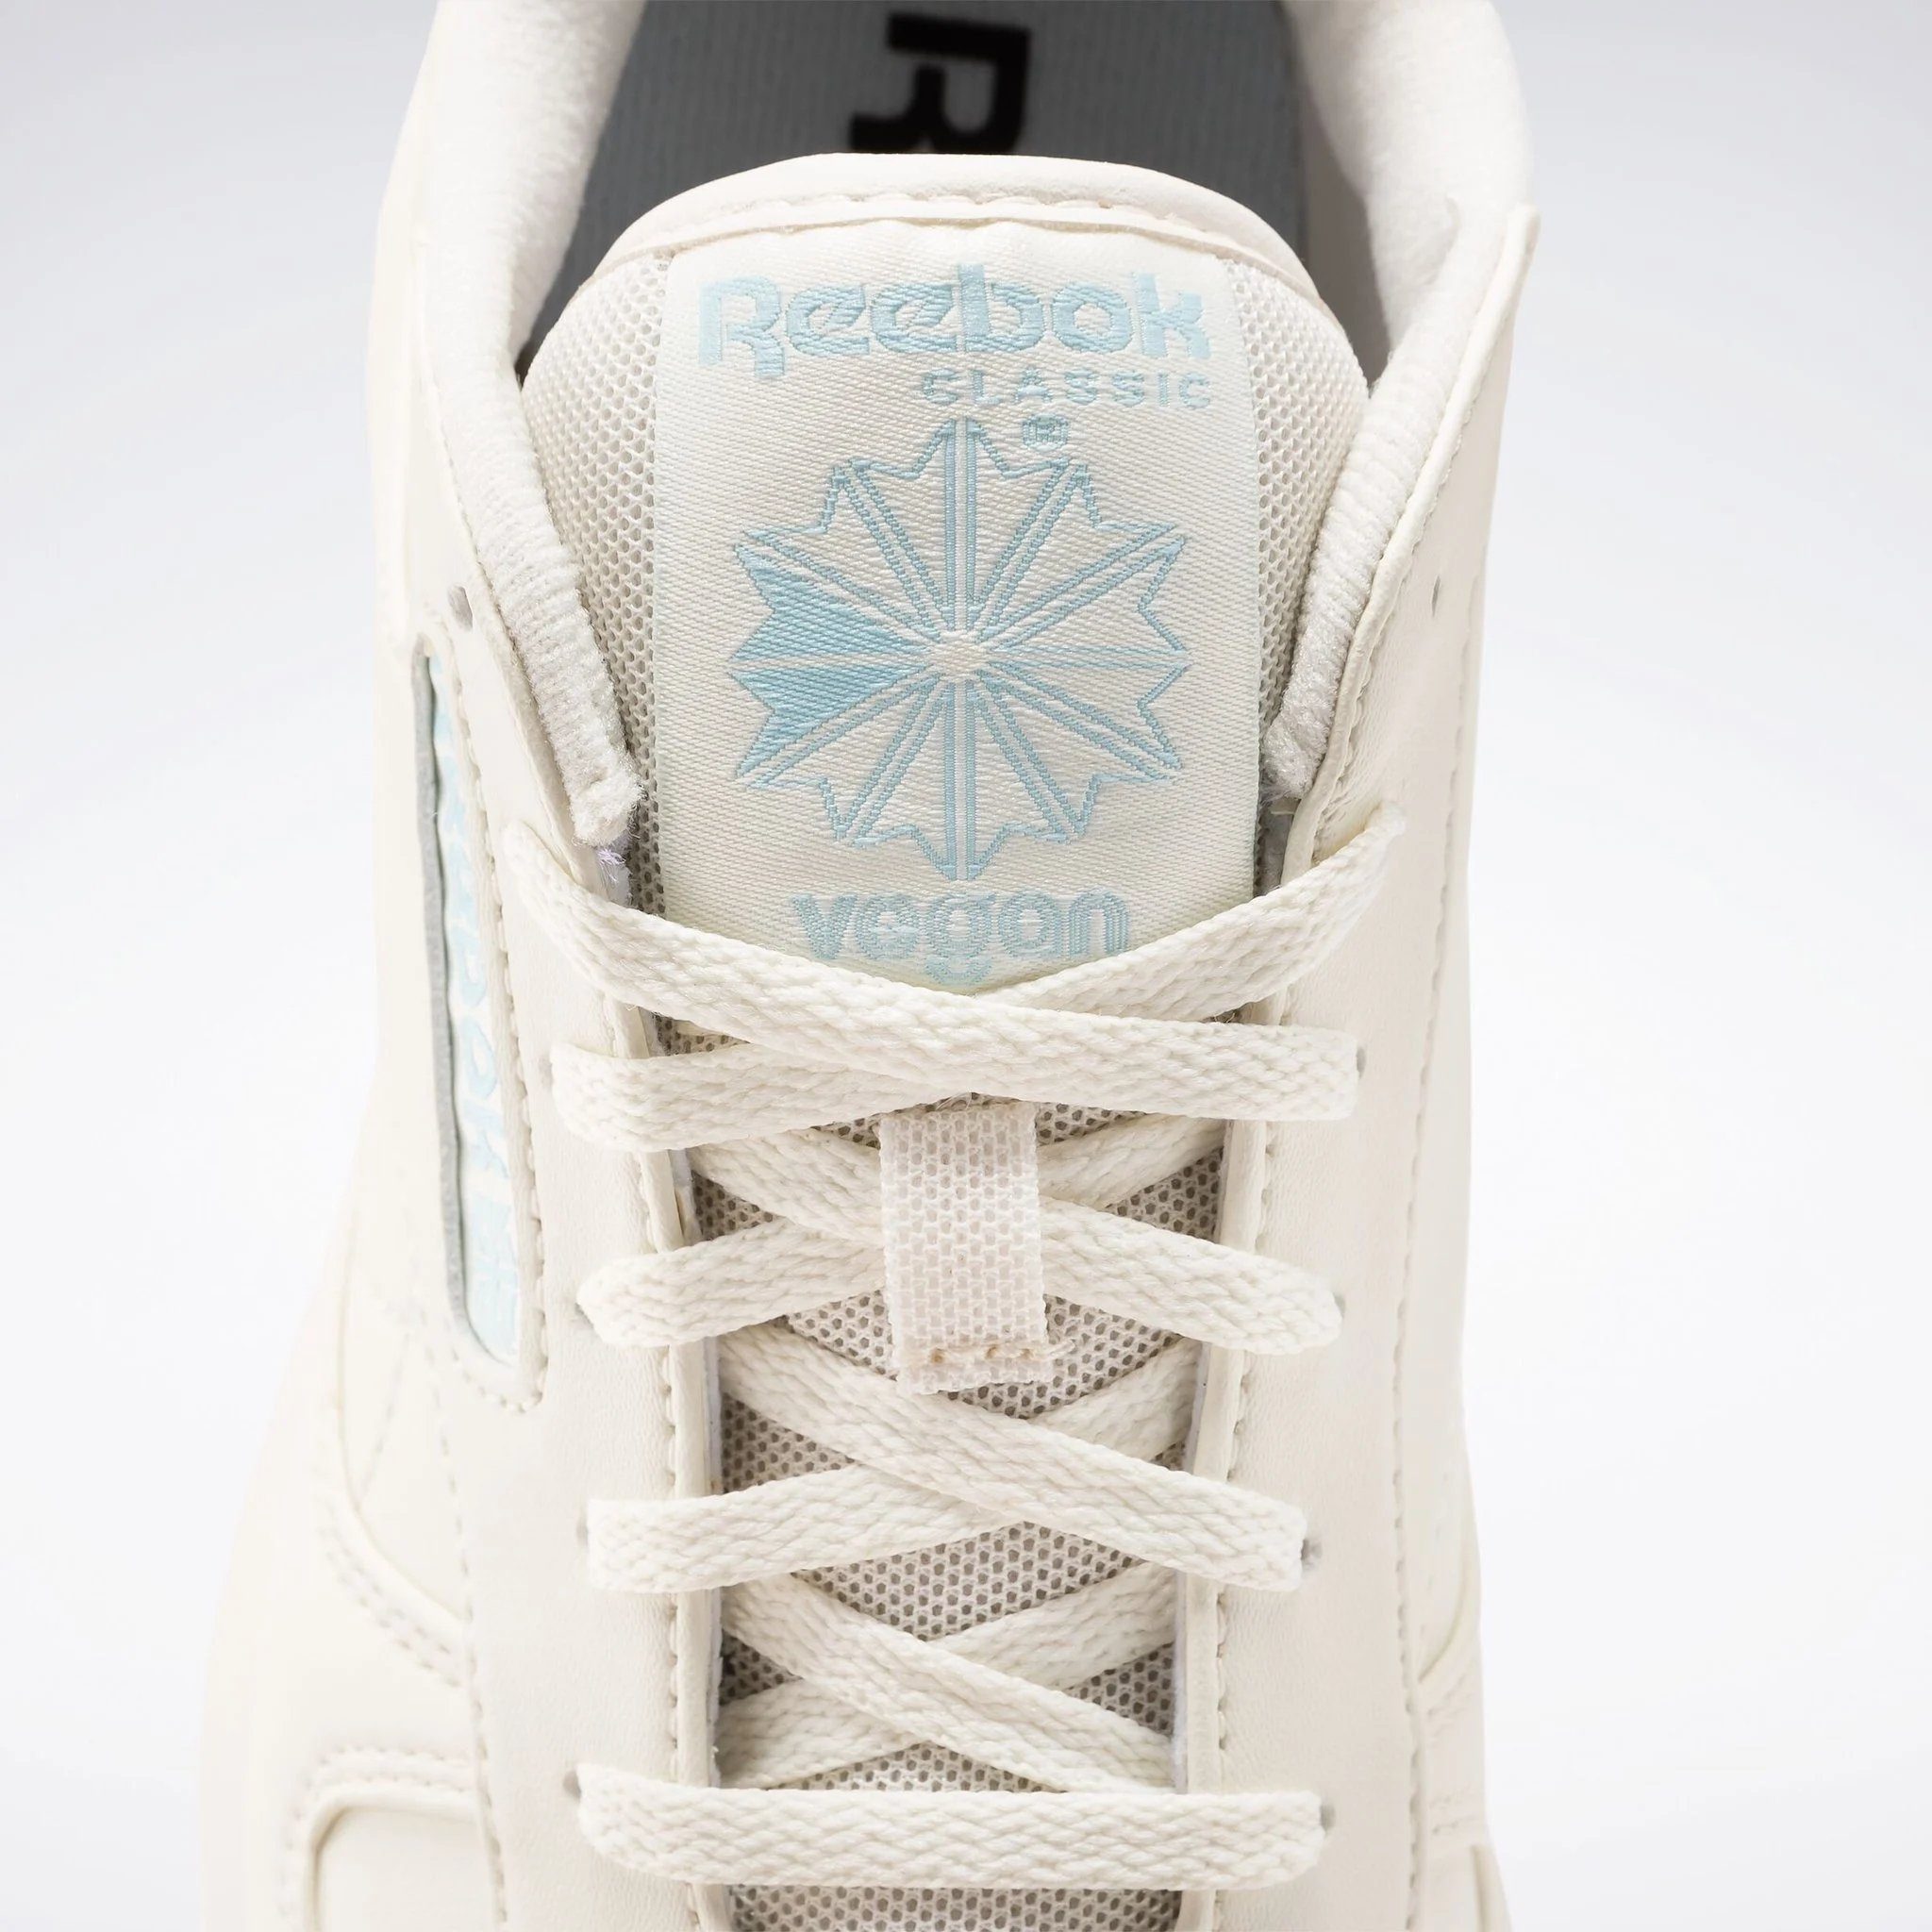 Reebok Classic Rebook Classic SP Sneaker Vegan weiß-blau